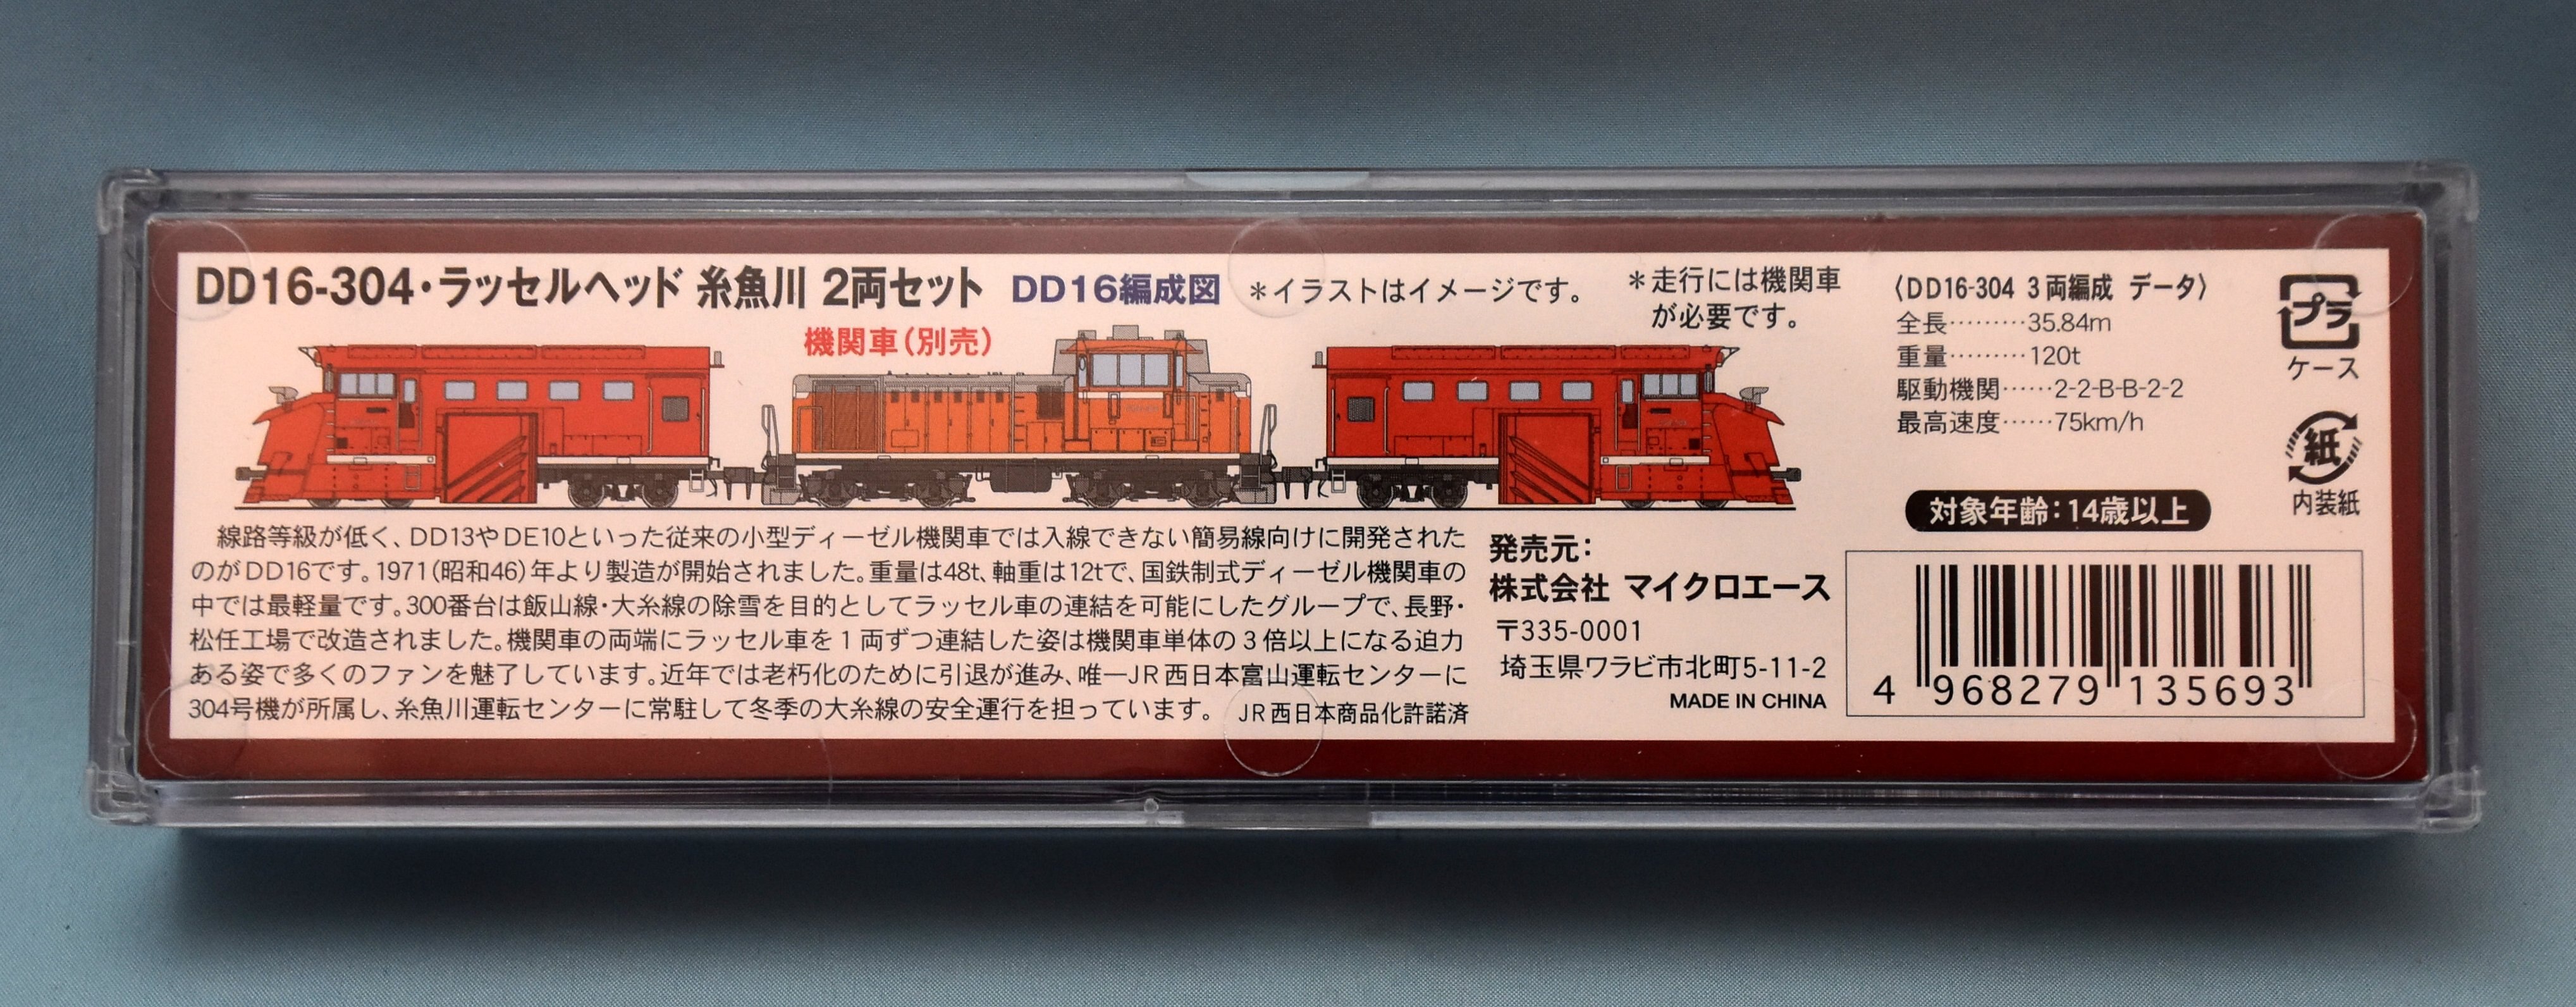 Nゲージ マイクロエース A7510 DD16-304標準色 機関車 つらら切り付 糸魚川